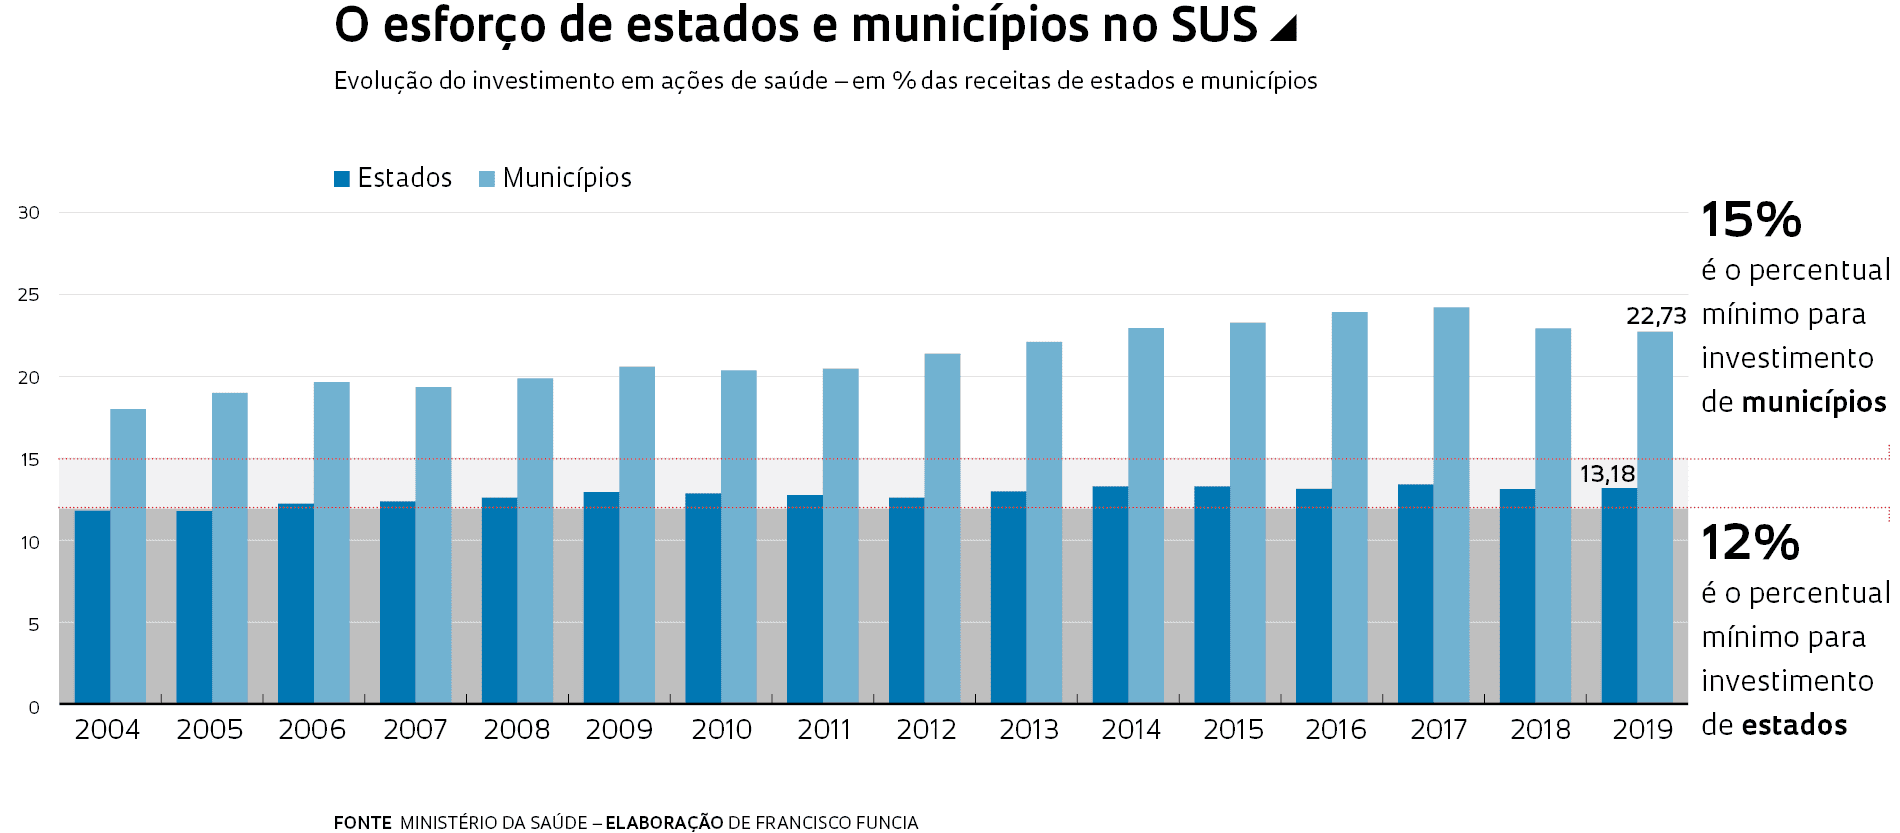 Evolução do investimento em ações de saúde – em % das receitas de estados e municípios